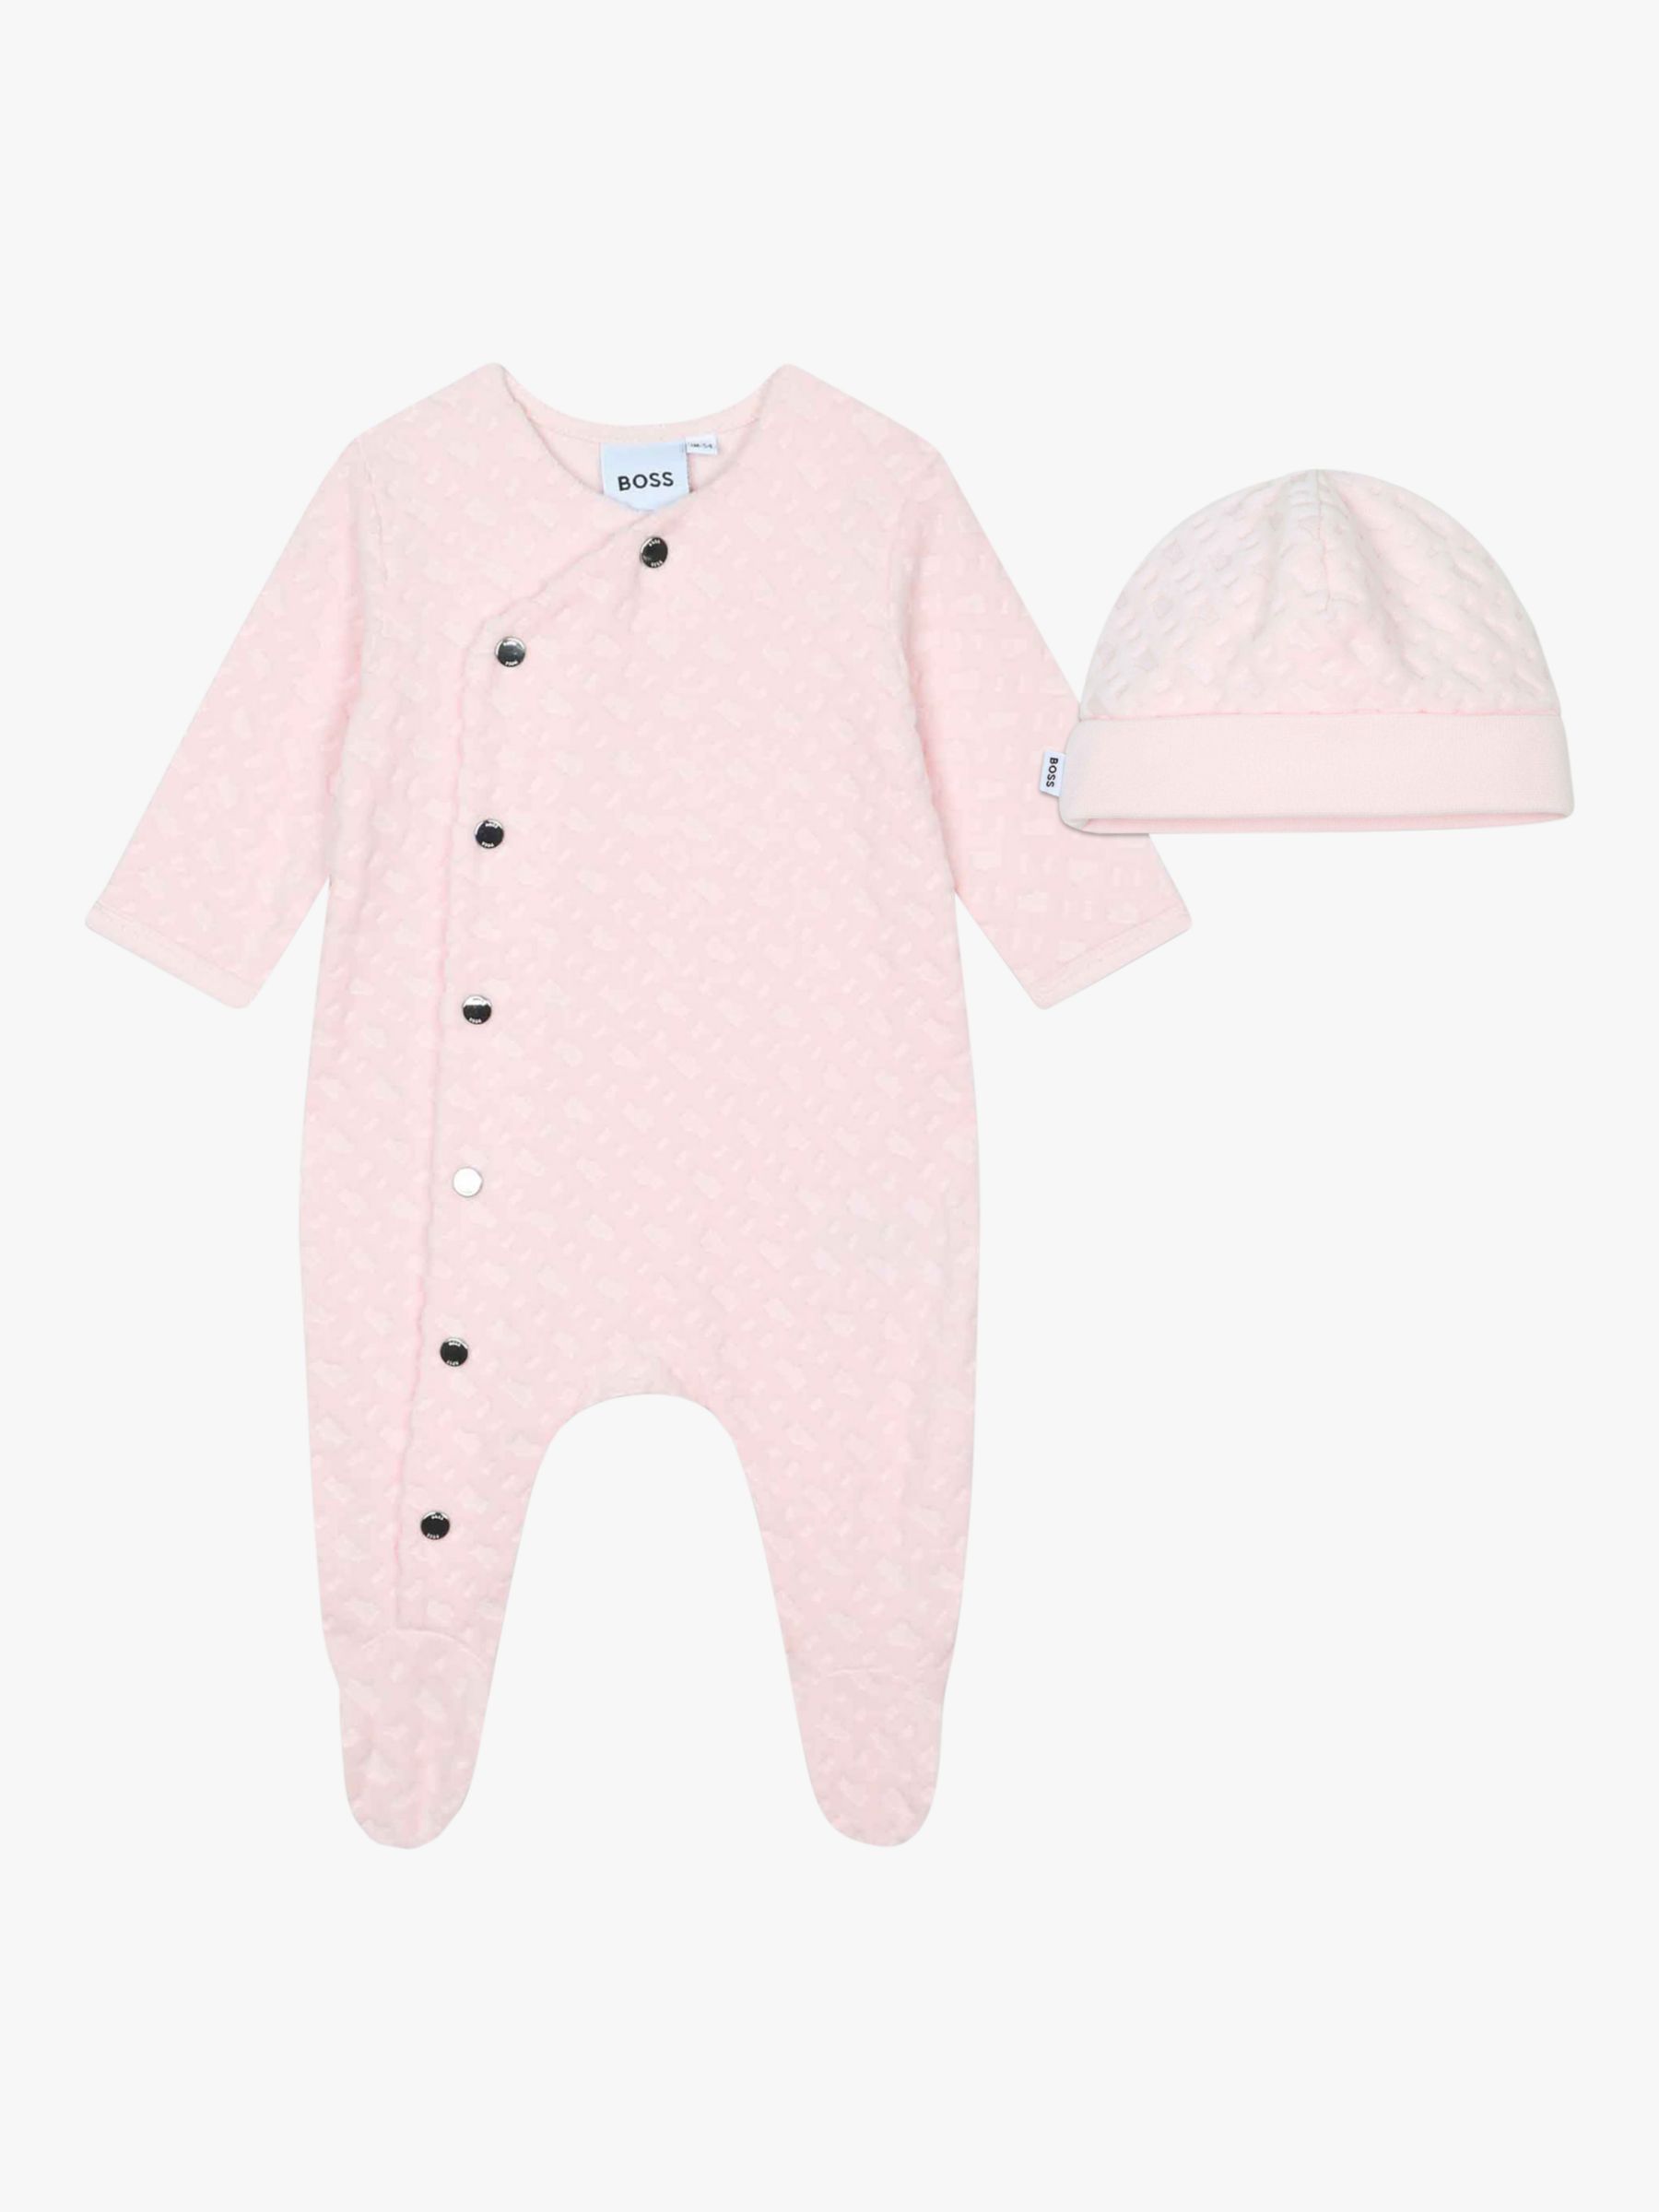 BOSS Baby Velvet Monogram Jacquard Sleepsuit & Hat Set, Pink, 6 months